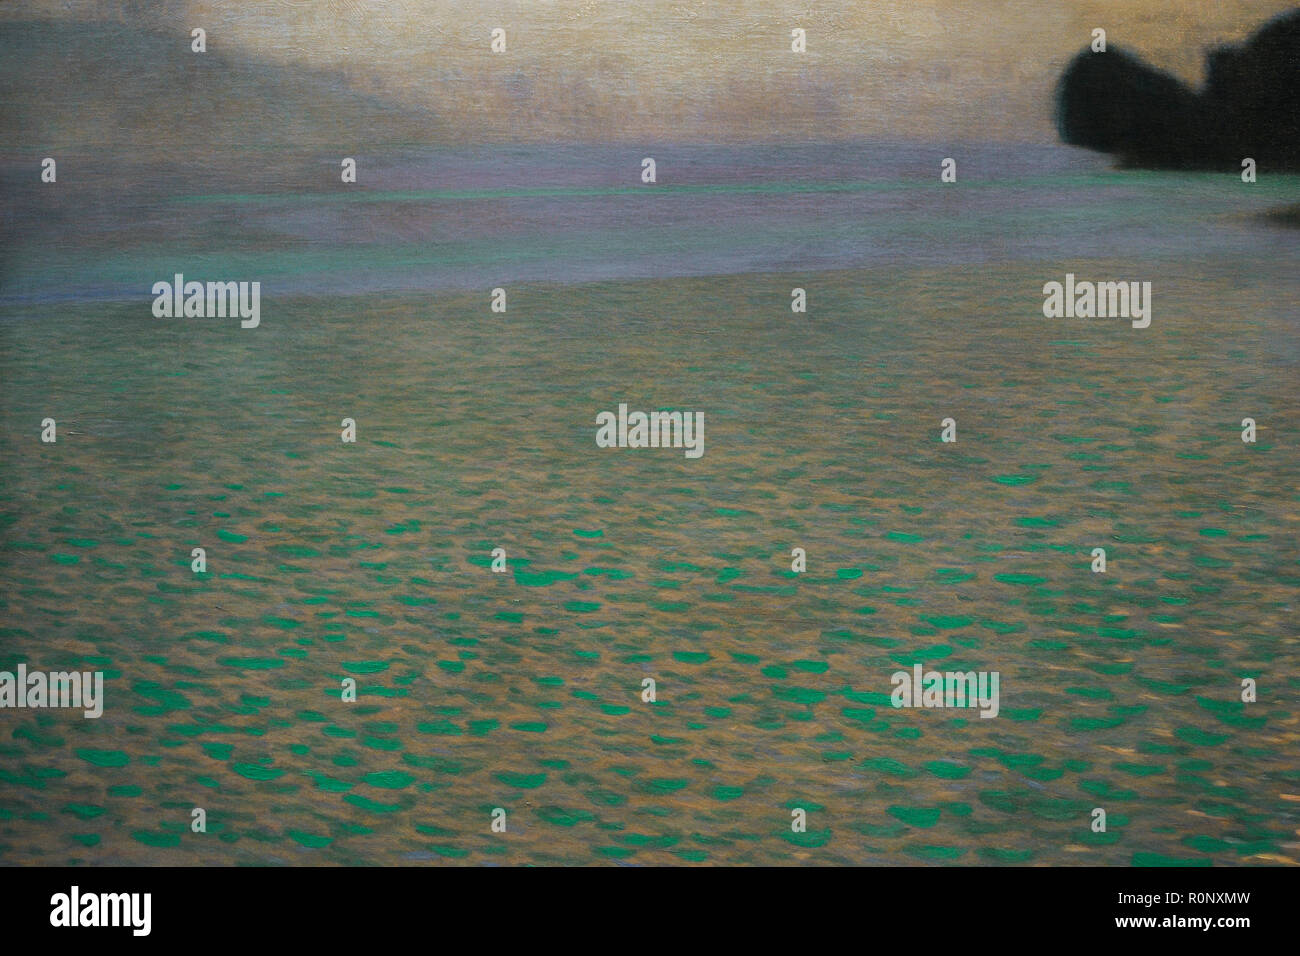 Gustav Klimt (1862-1918). Austriaco pittore simbolista. Attersee (lago Attersee), 1900. Dettaglio. Olio su tela. 80,2 x 80, 2 cm. Museo Leopold. Vienna, Austria. Foto Stock